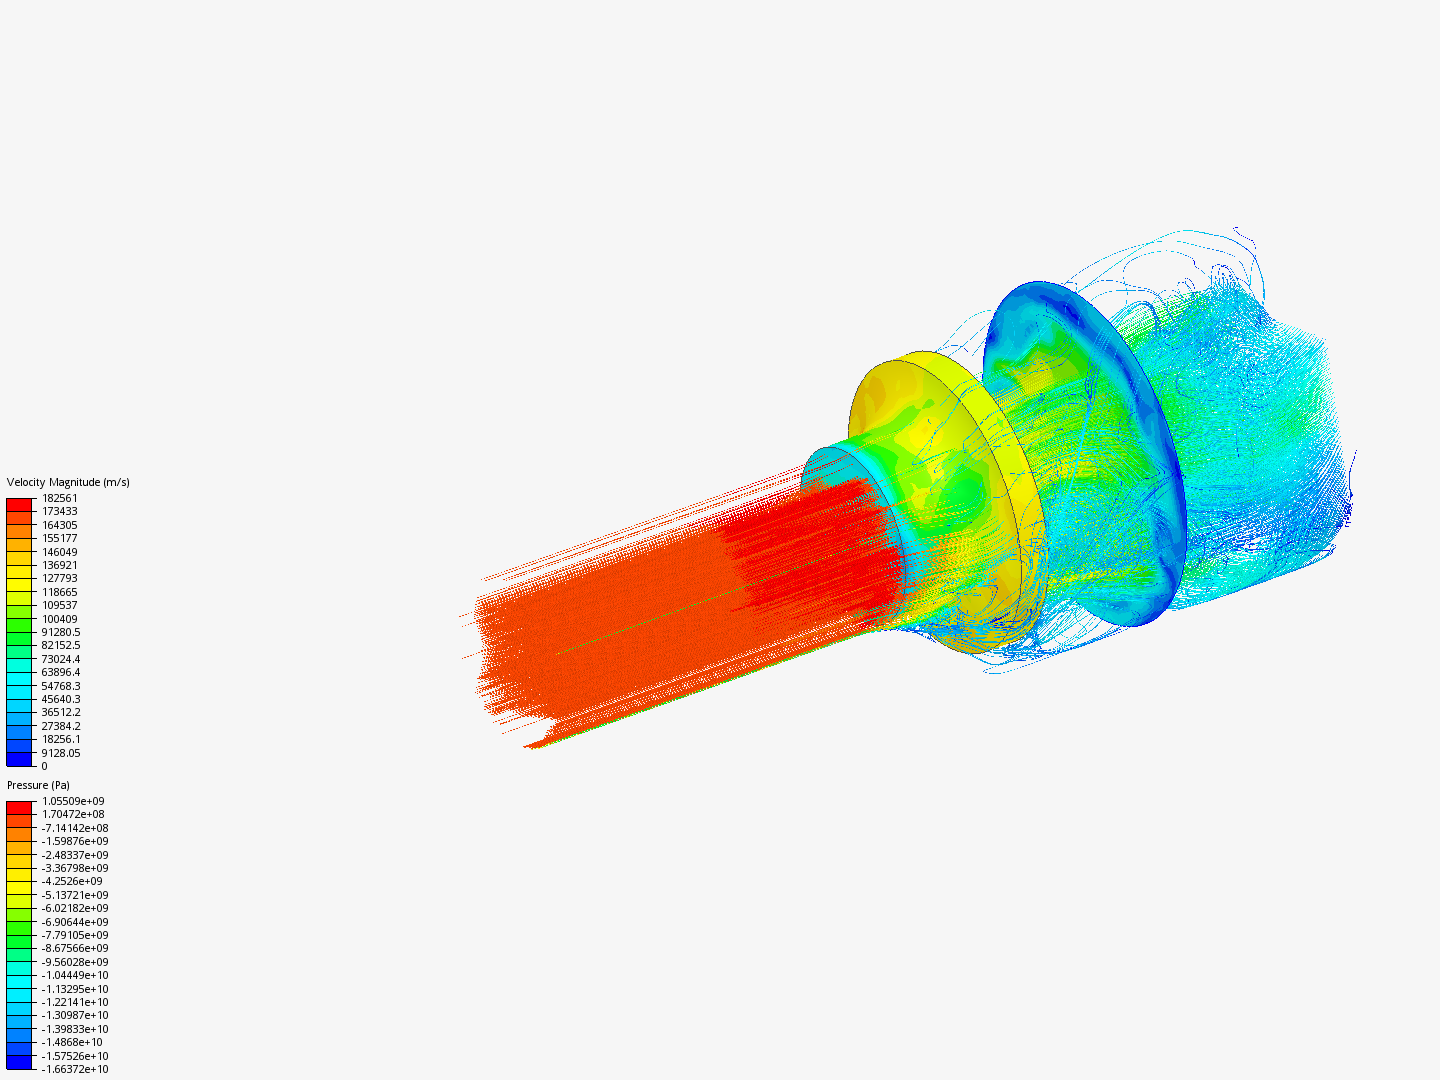 turbine simulation image